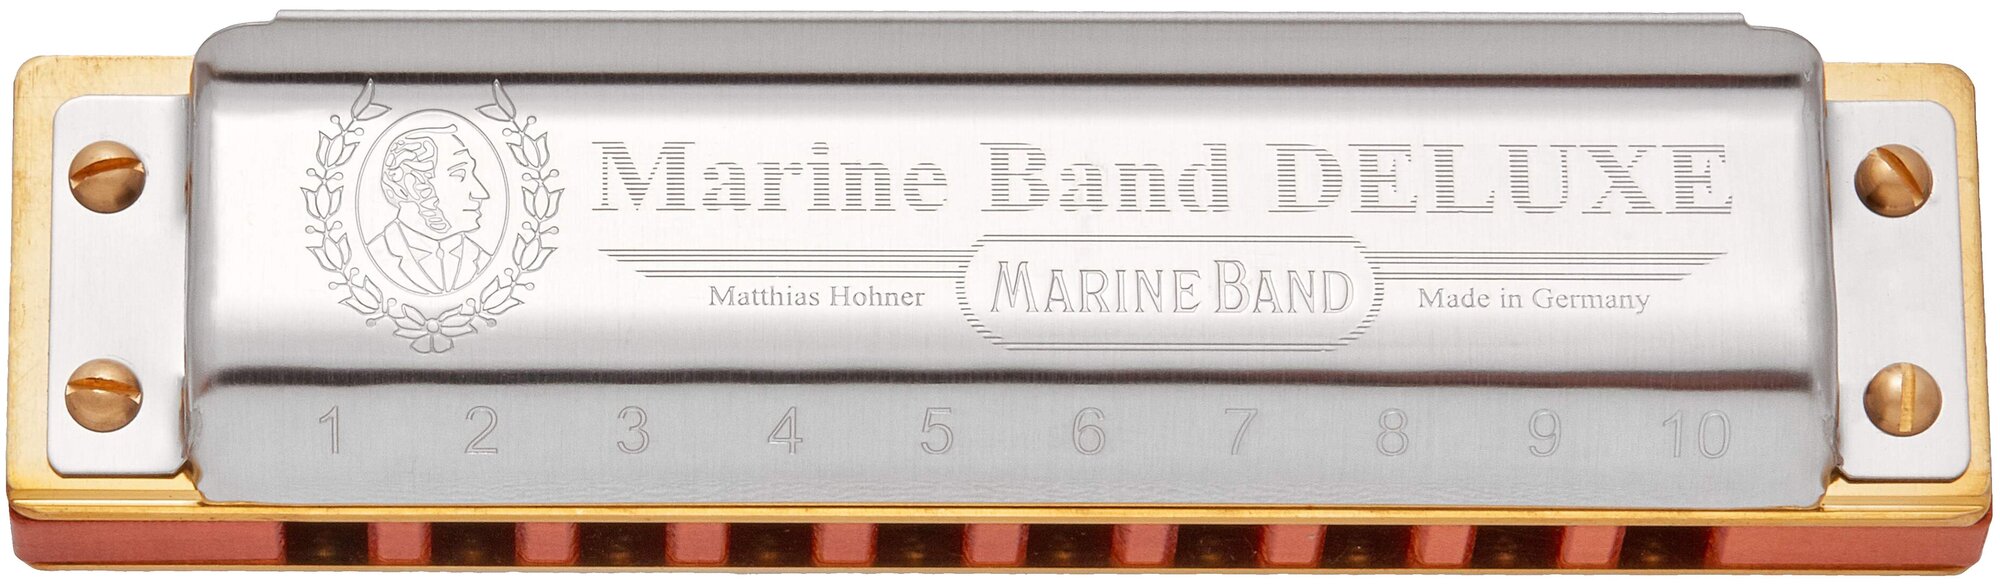 HOHNER Marine Band Deluxe 2005/20 E Губная гармоника диатоническая